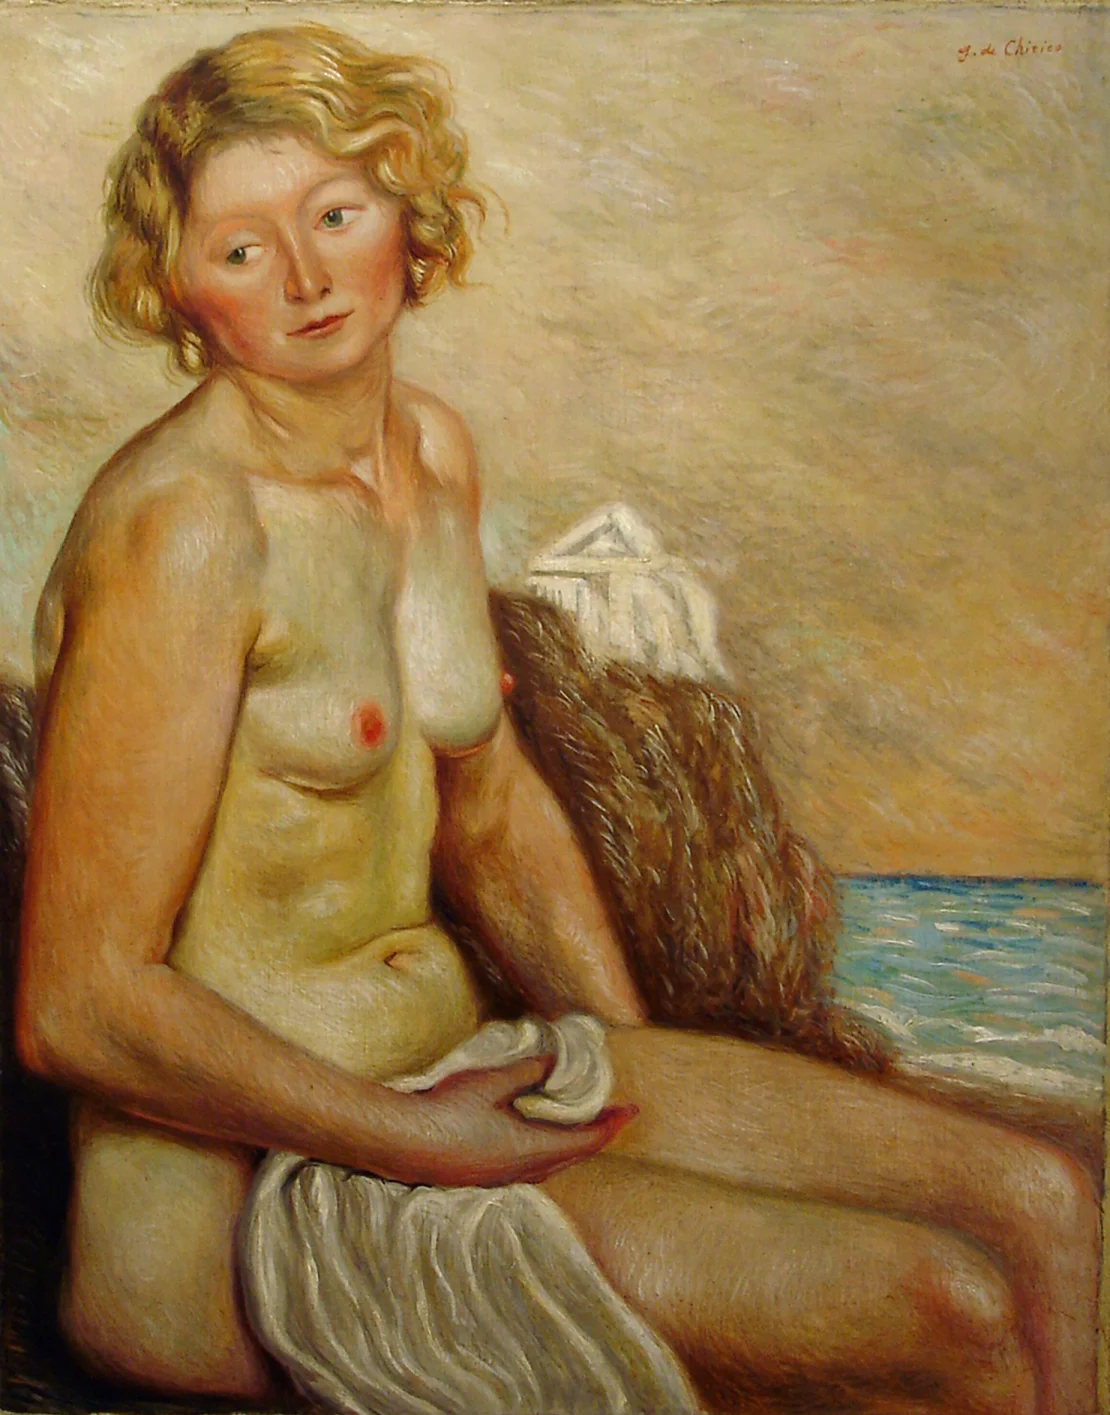  Giorgio de Chirico "Nudo di donna," 1930Courtesy private collection, Turin 